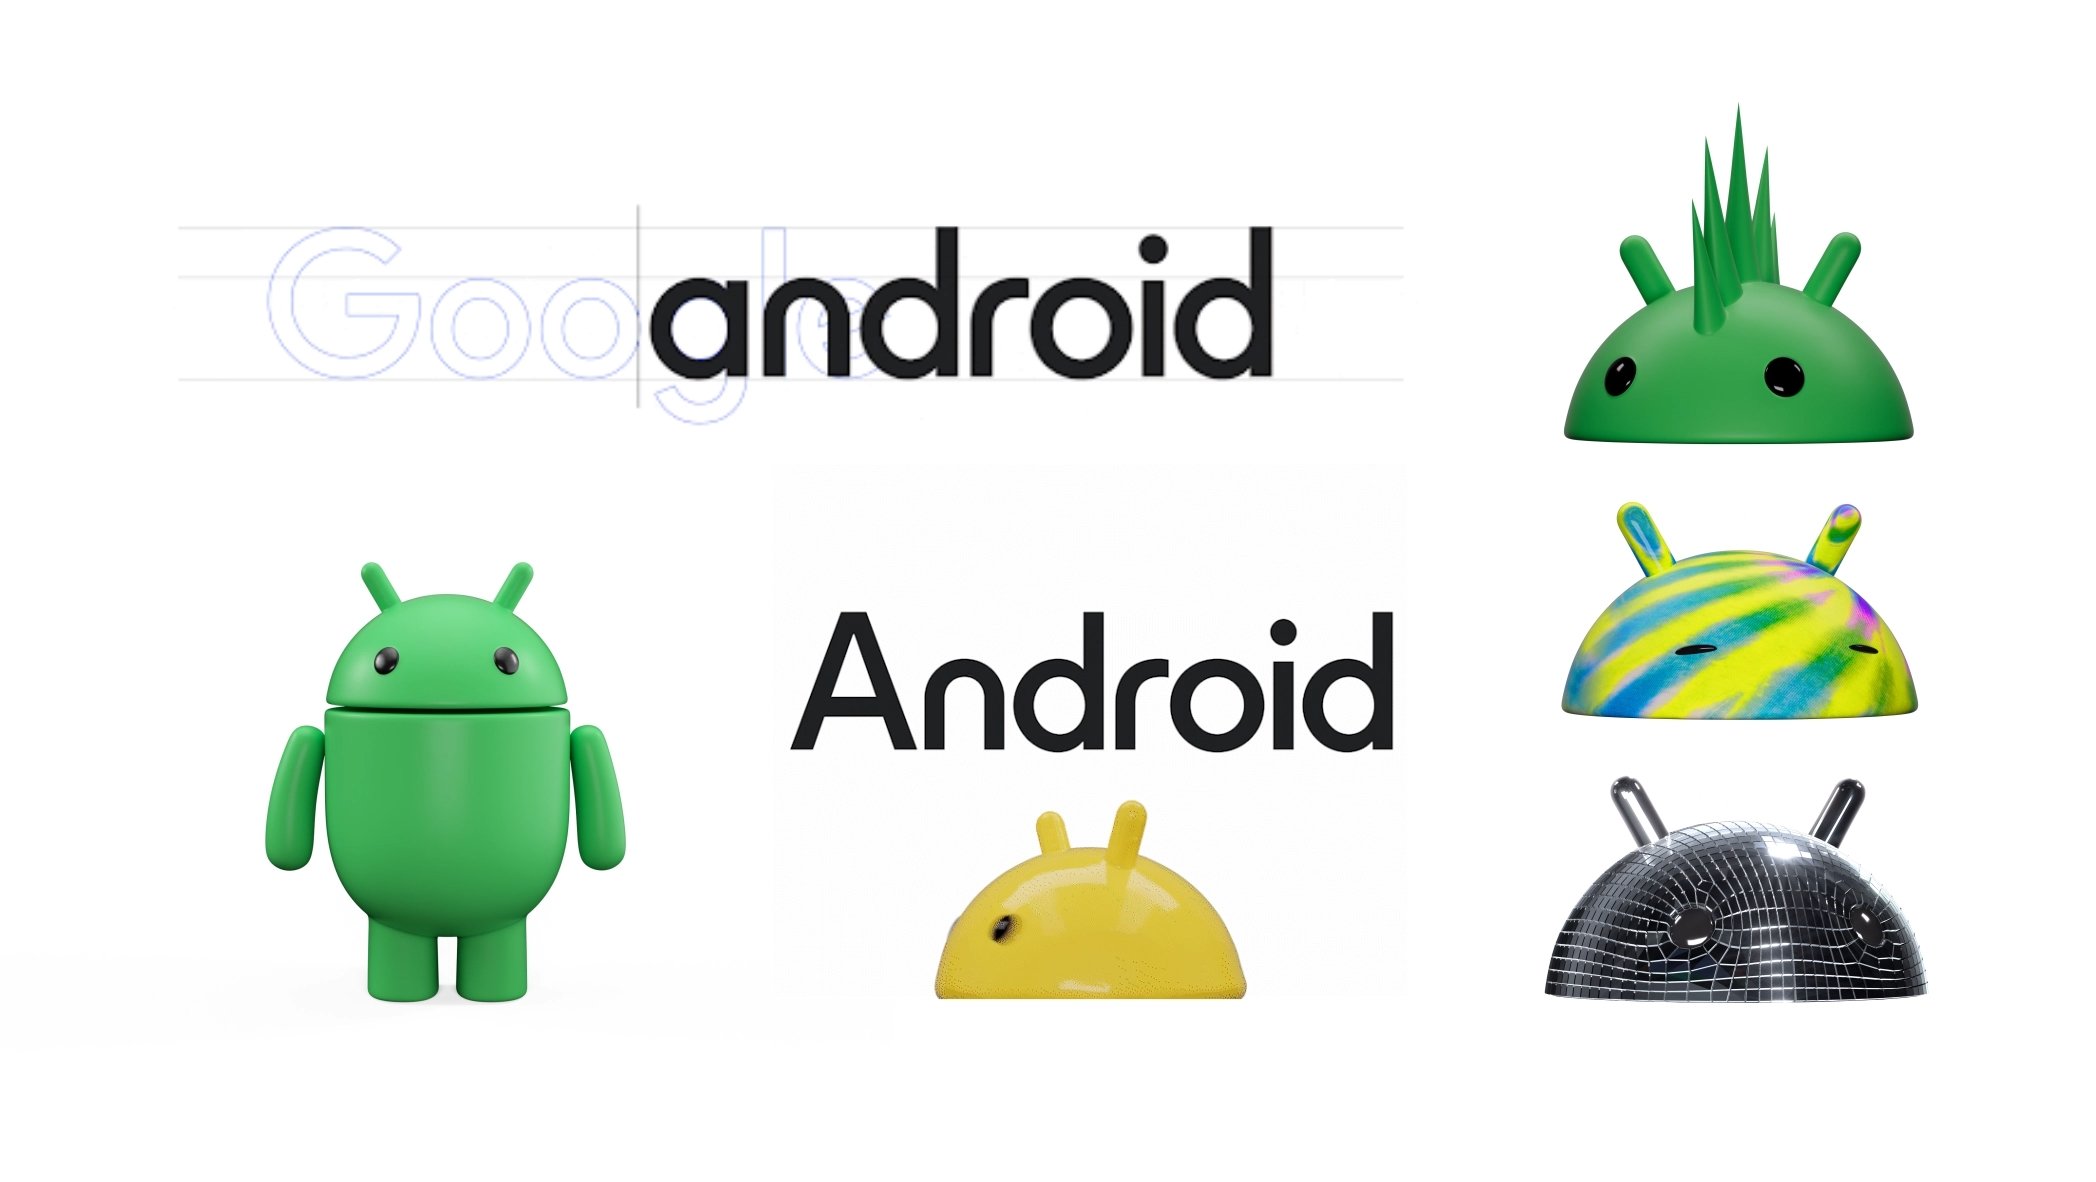 Android nova imagem do logo 3d